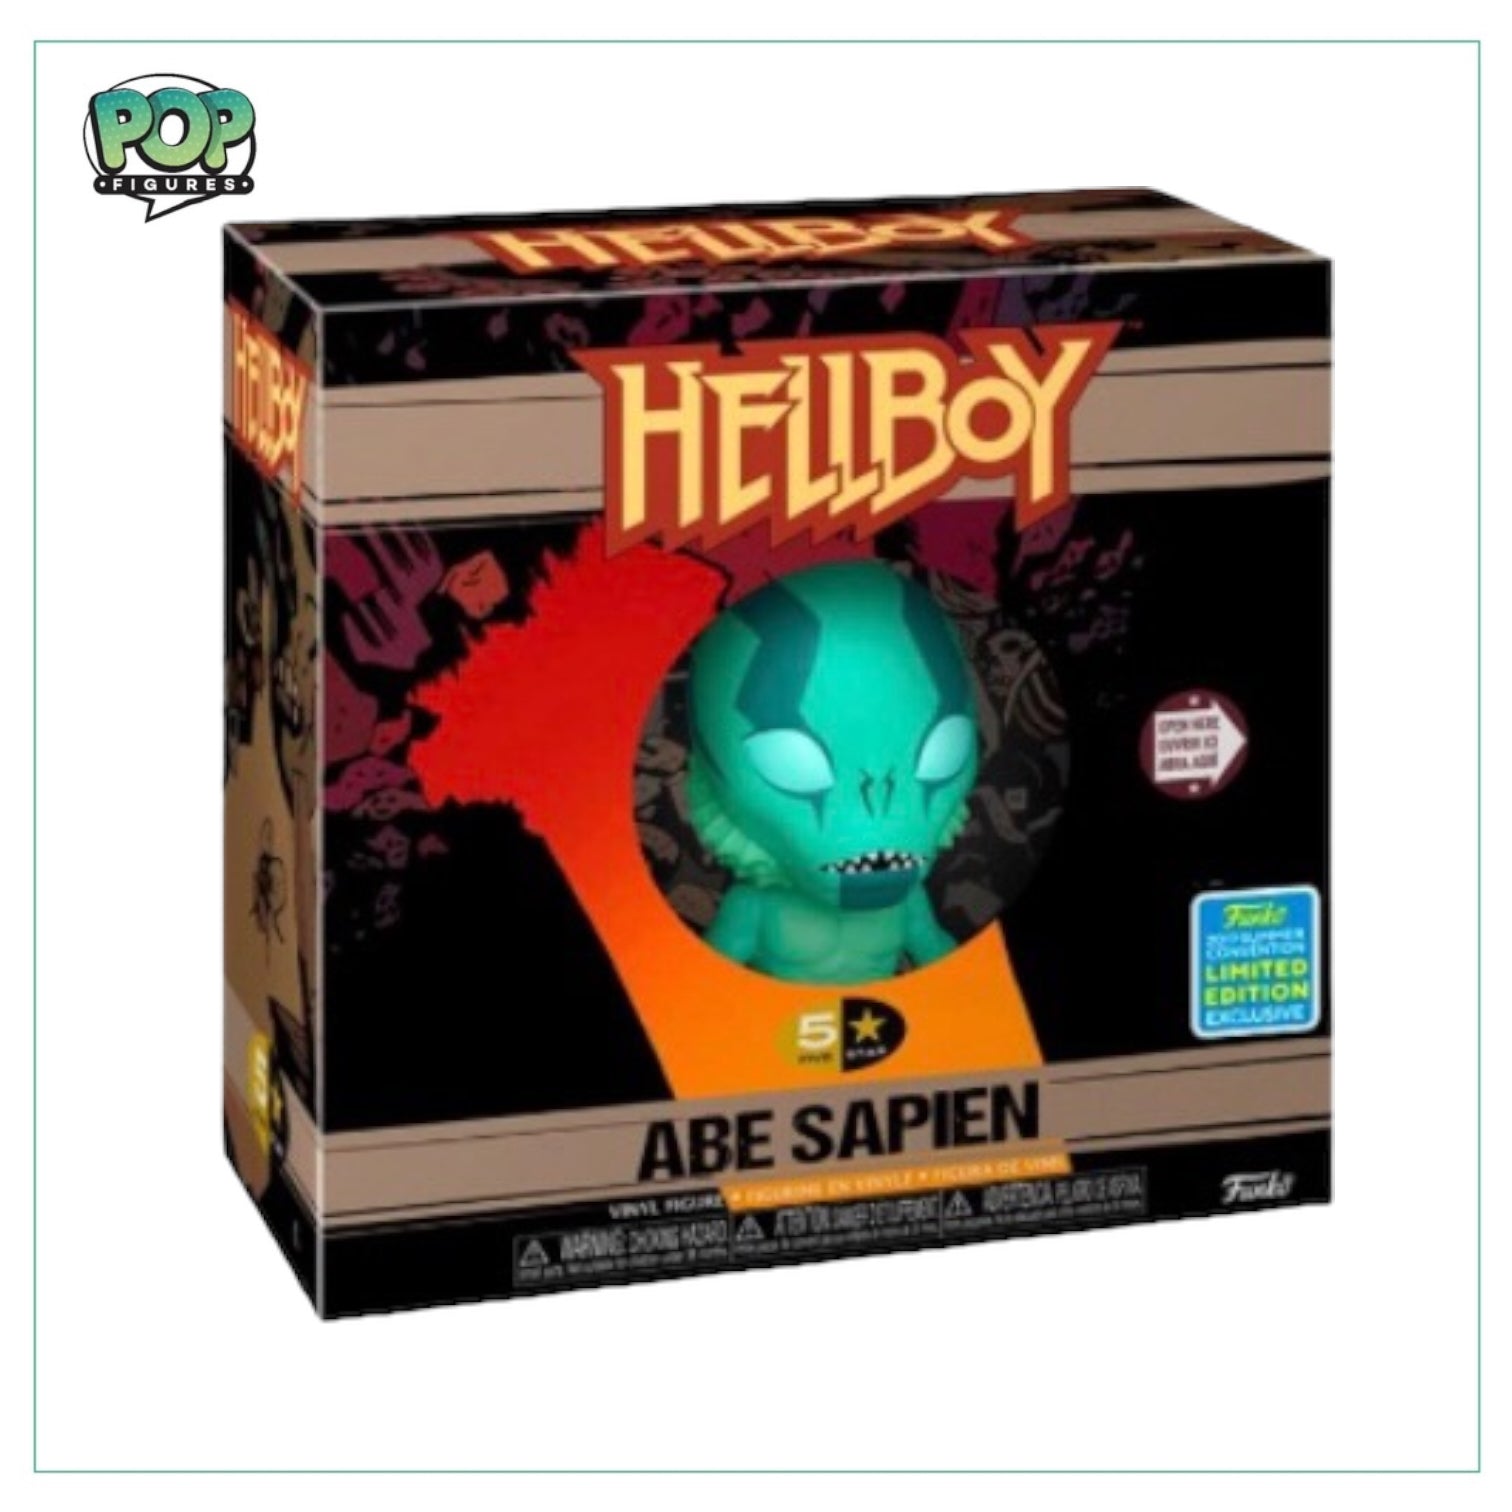 Abe Sapien Funko 5 Star! - Hellboy - Limited Edition